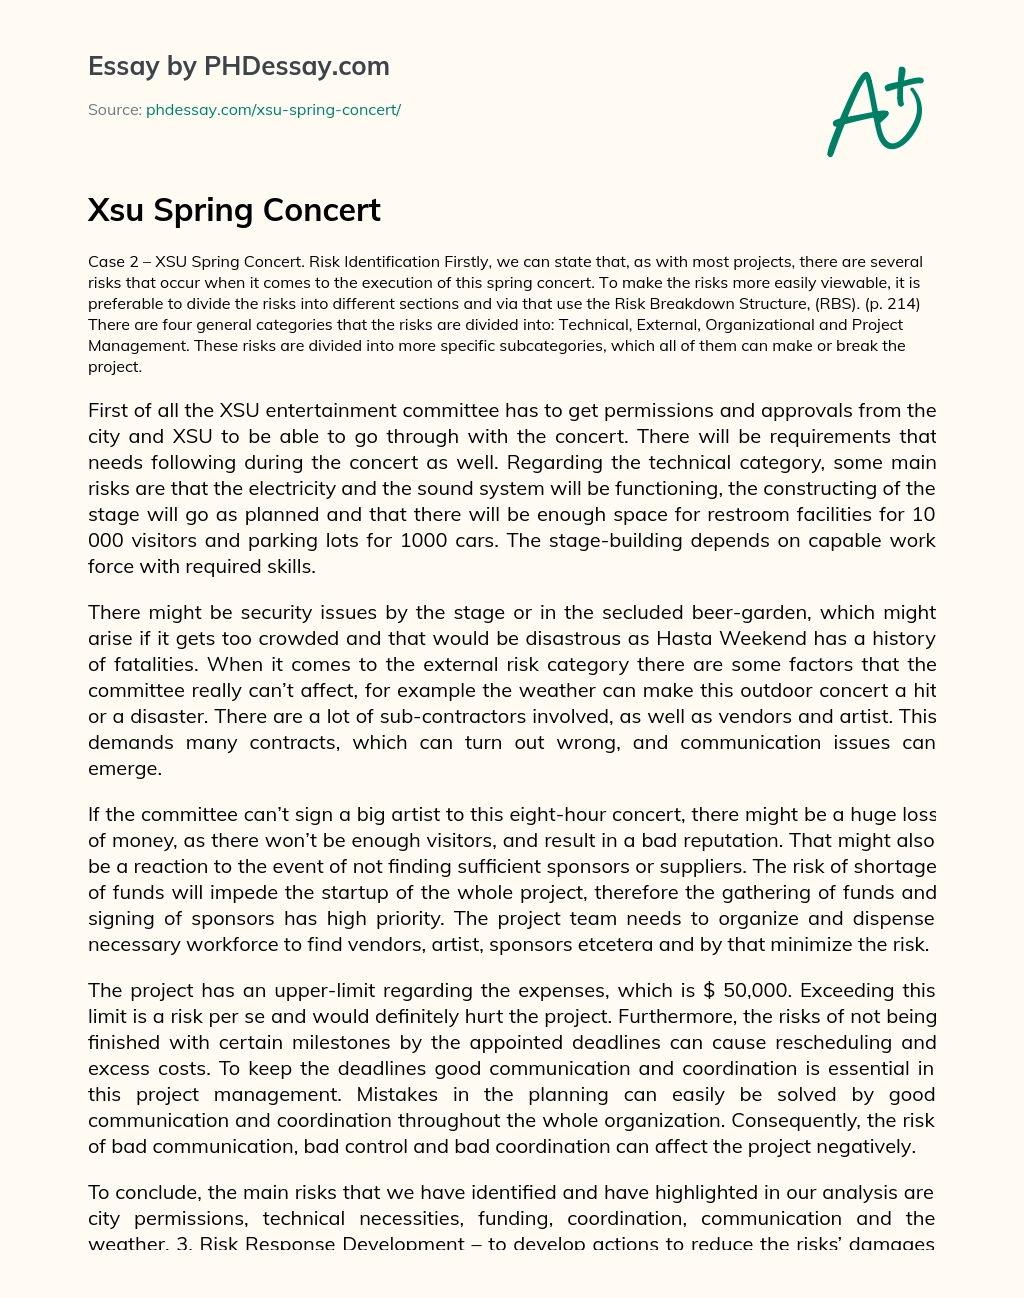 Xsu Spring Concert essay